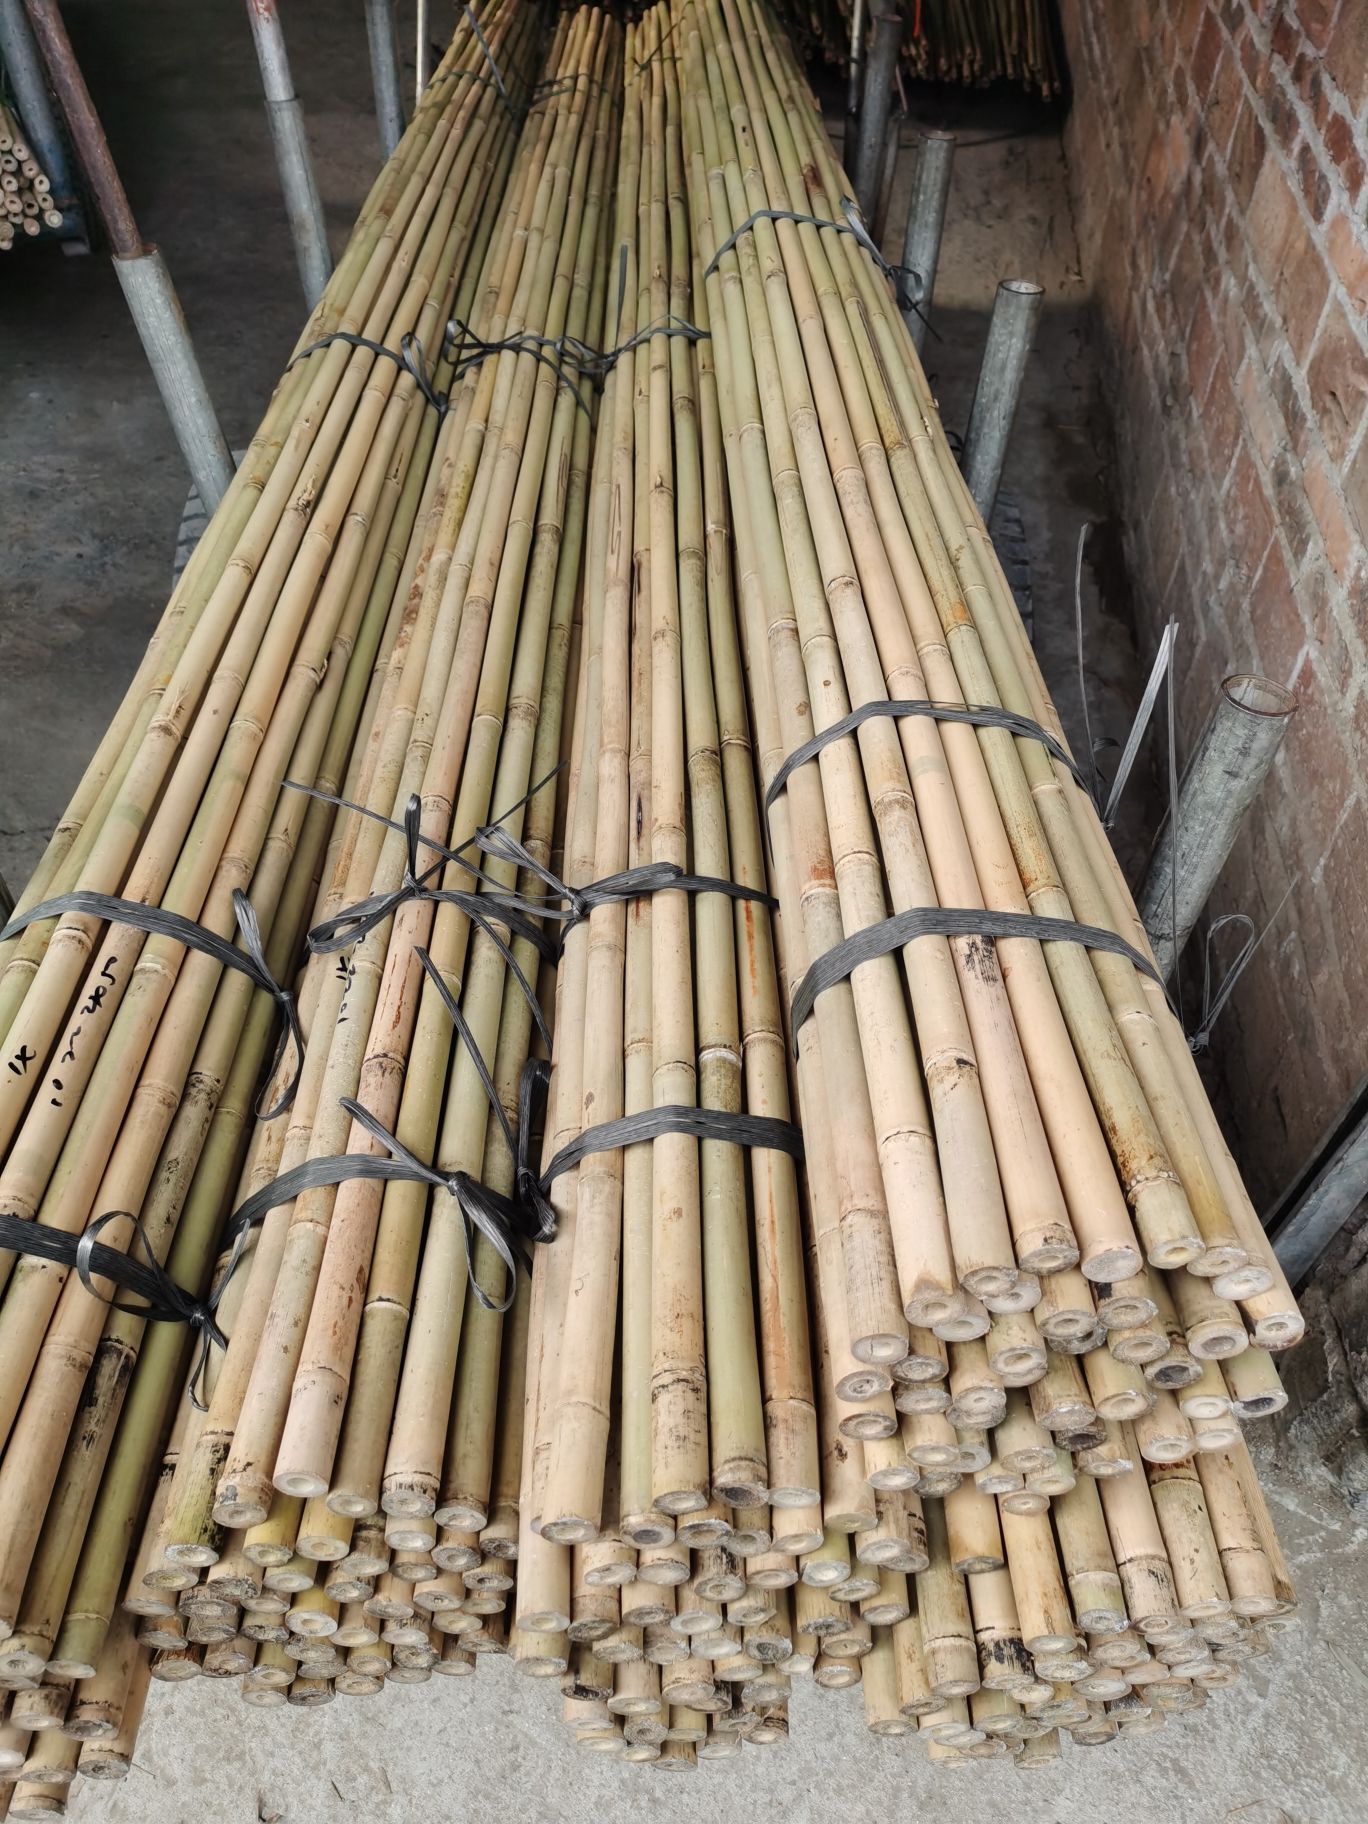 Tyczki bambusowe związane.